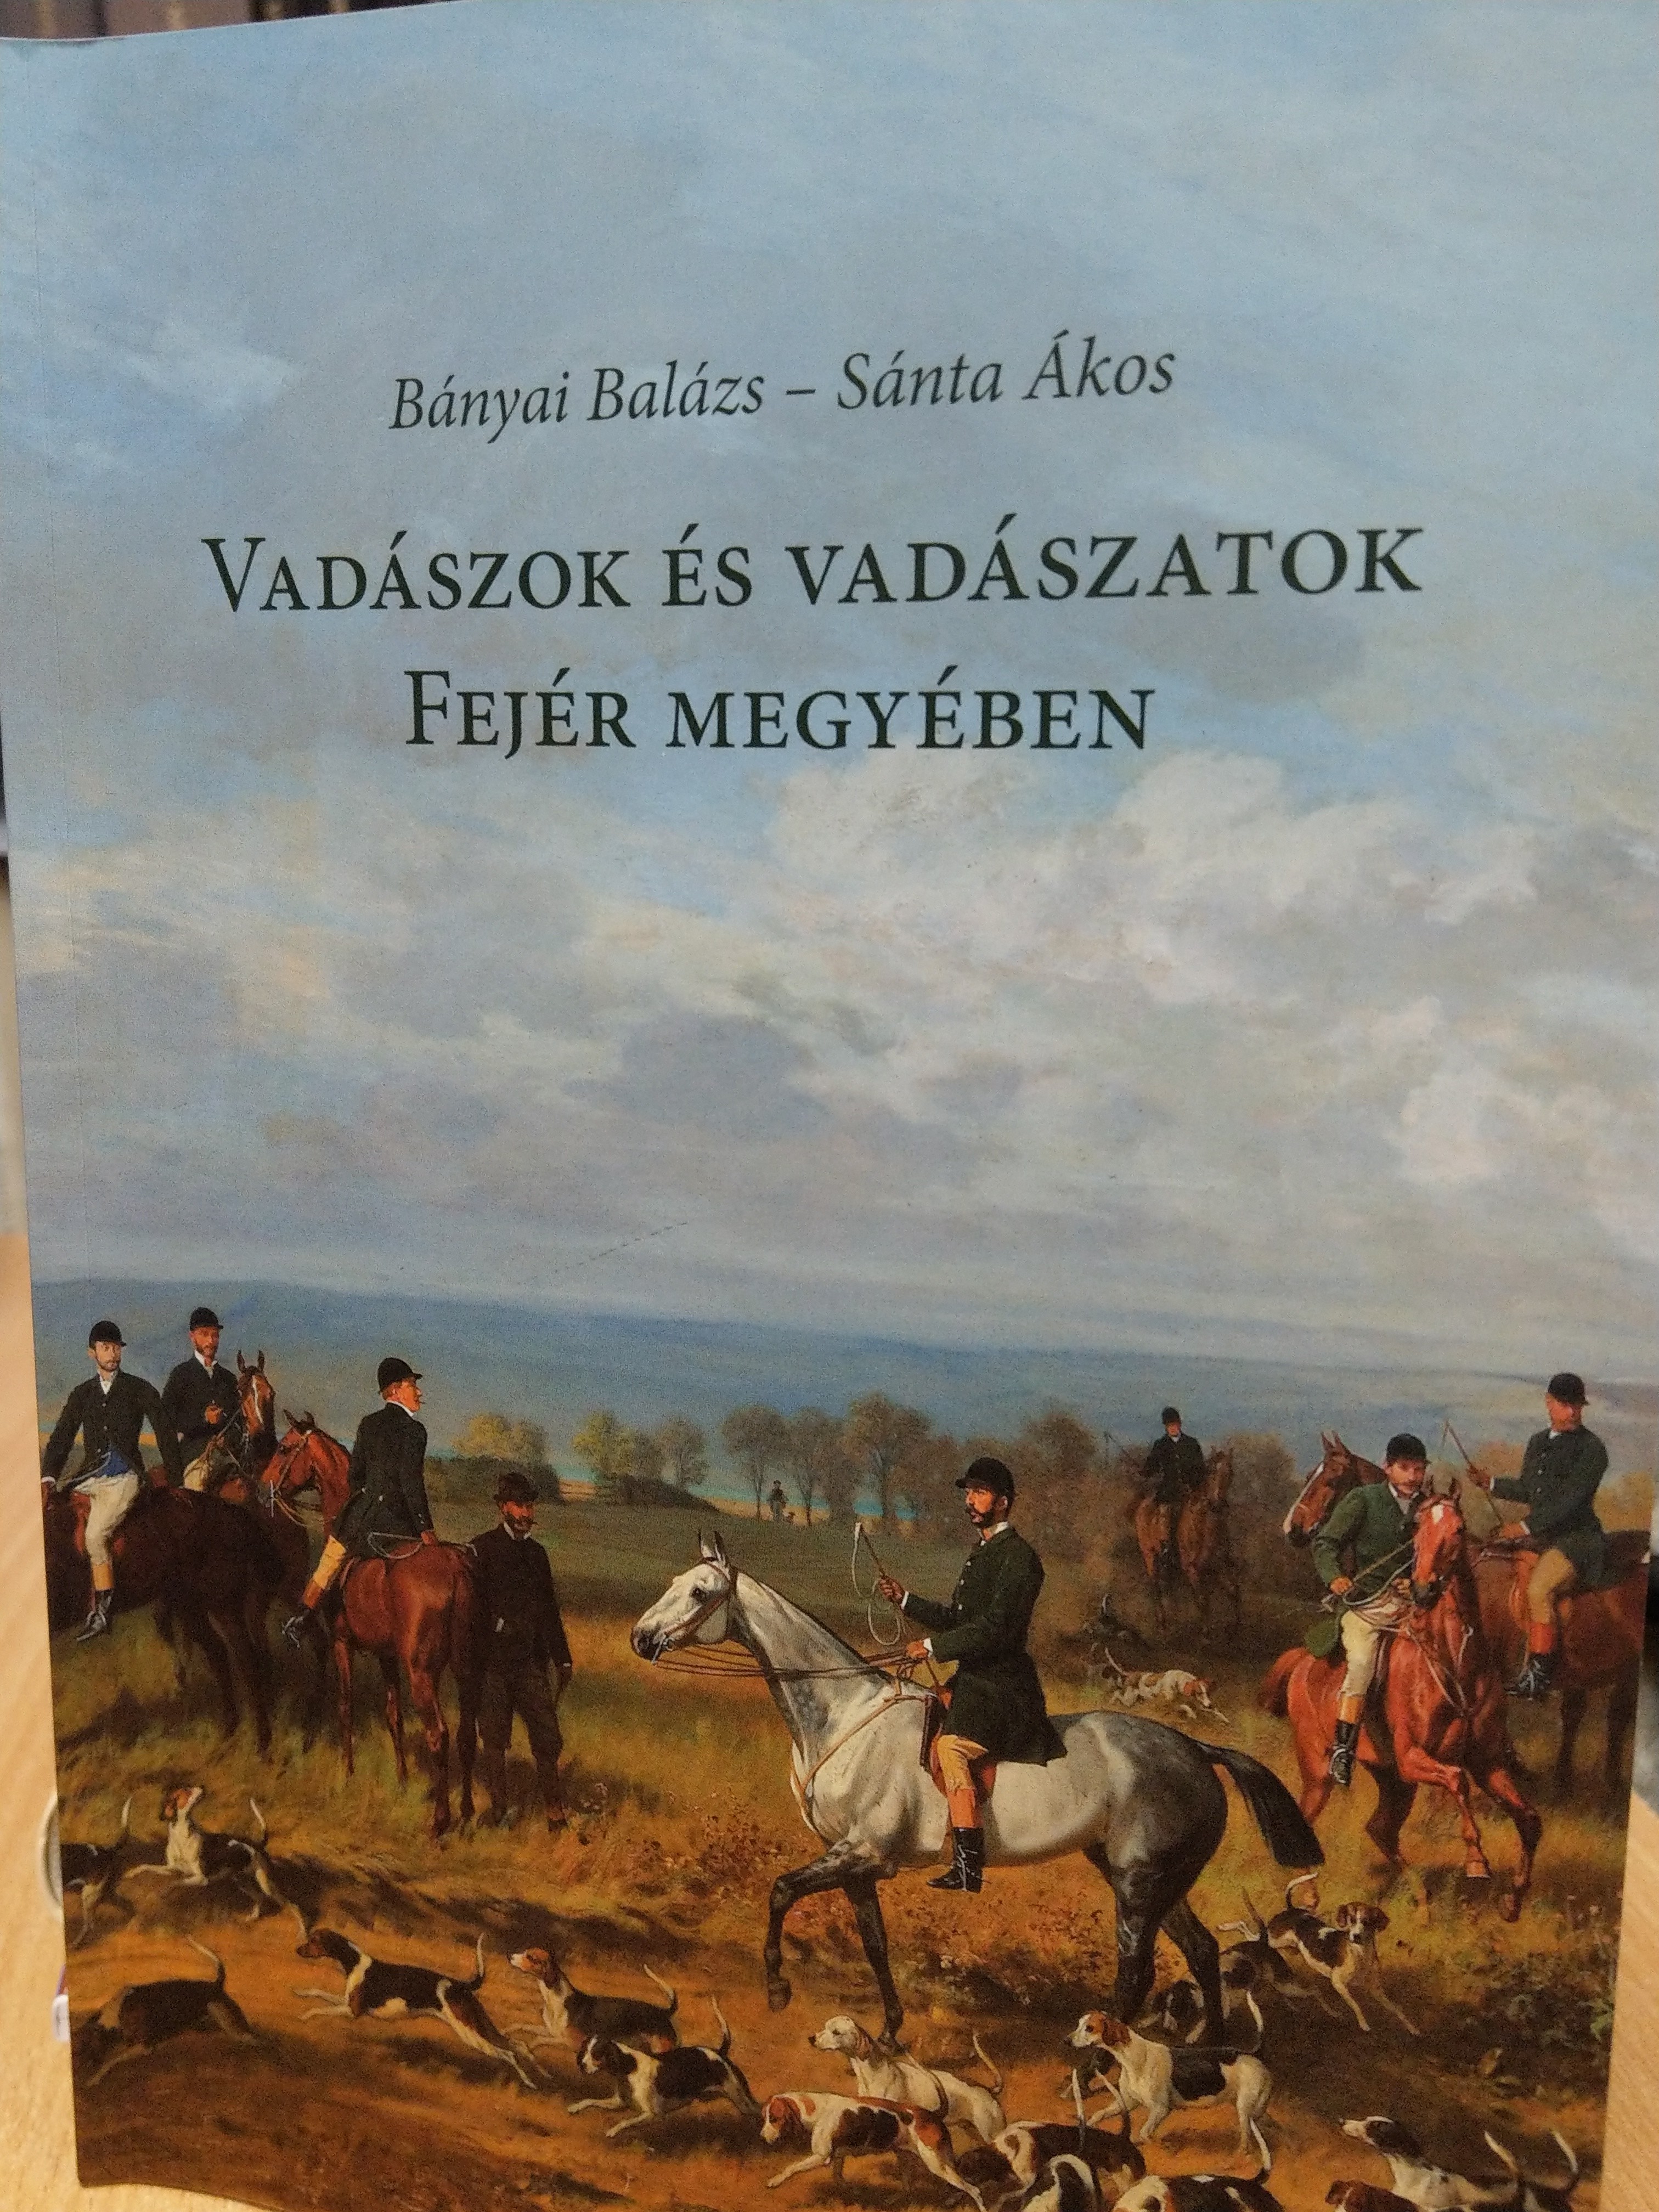 Bányai Balázs, Sánta Ákos: Vadászok és vadászatok Fejér megyében (Rippl-Rónai Múzeum CC BY-NC-ND)